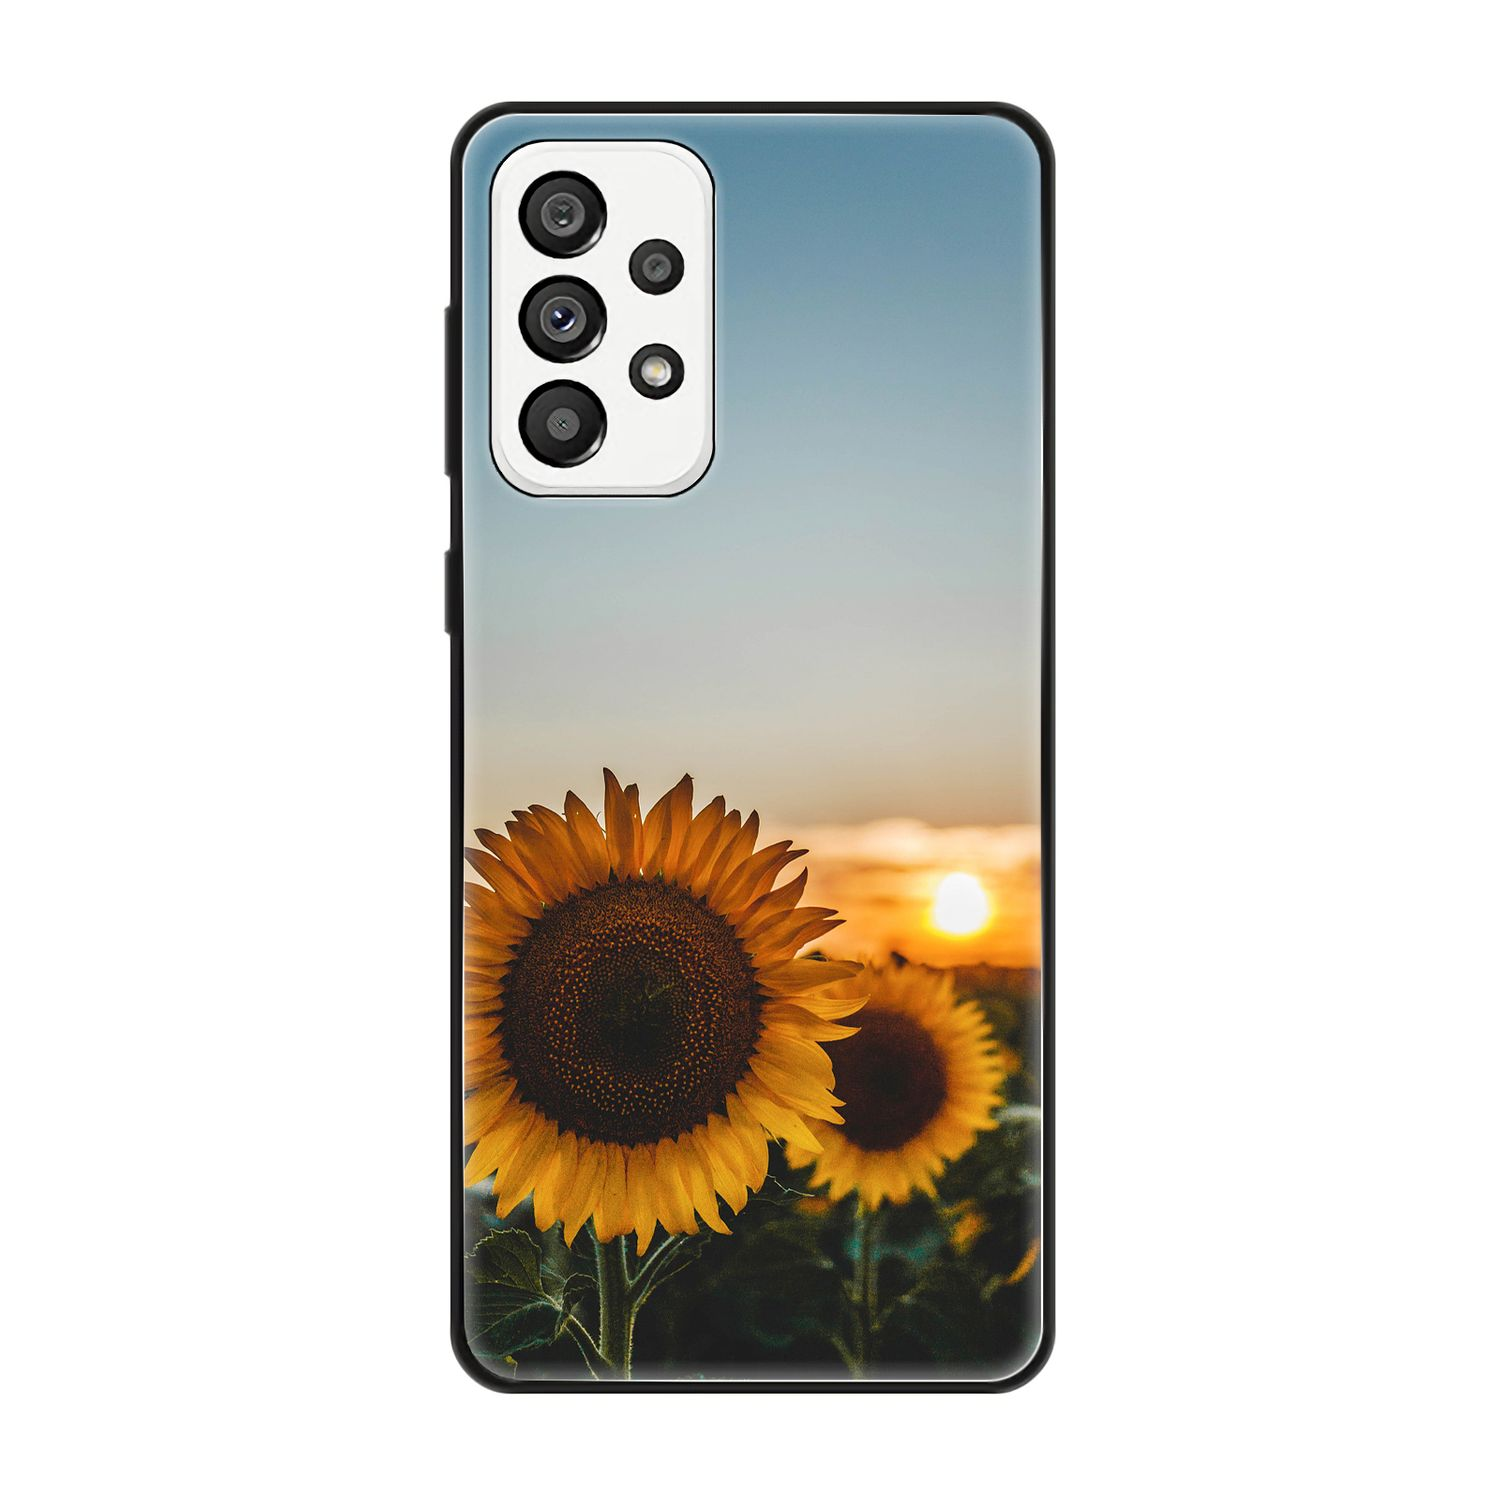 Case, Galaxy DESIGN A73 Backcover, KÖNIG Sonnenblumen 5G, Samsung,